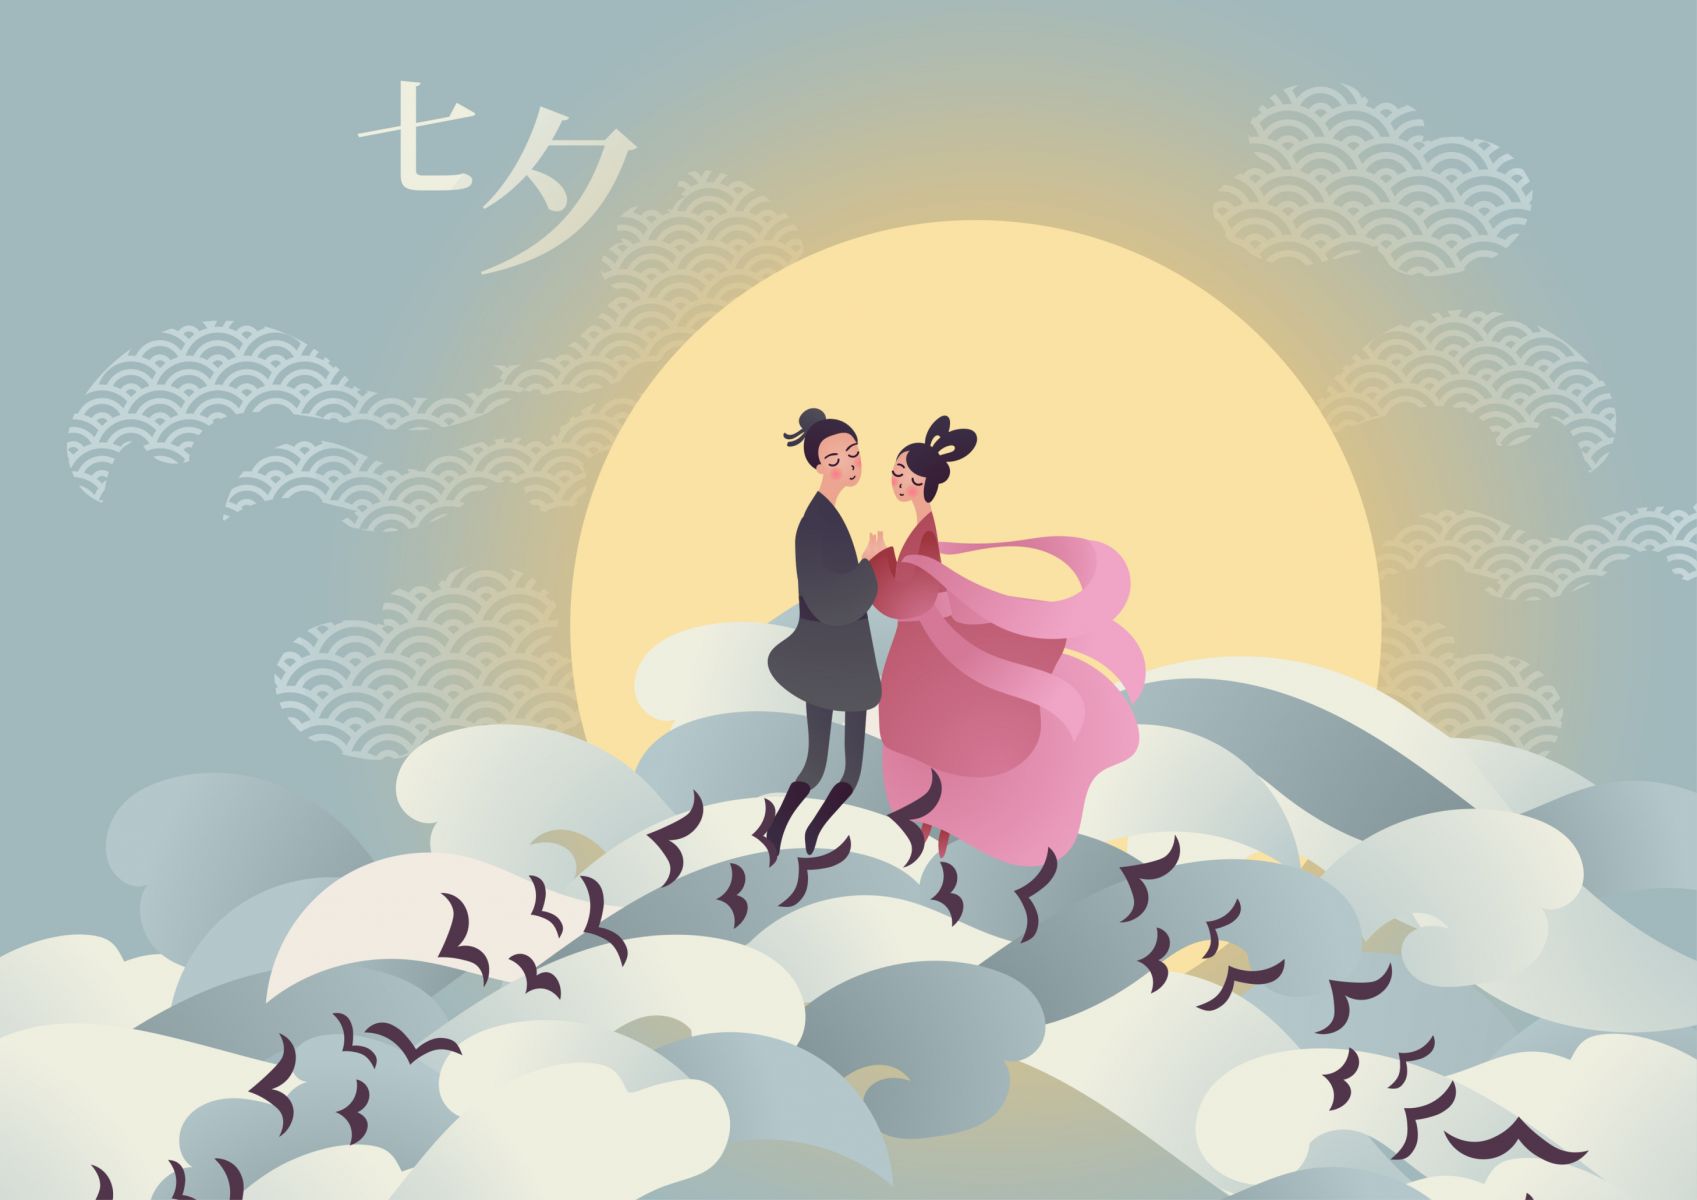 บันทึกชีวิตในไต้หวัน : เทศกาลชีซี（七夕）ไหว้อะไร? วันแห่งความรักของชาวจีน ที่ไม่ได้มีแต่ตำนานของสาวทอผ้าและชายเลี้ยงวัว